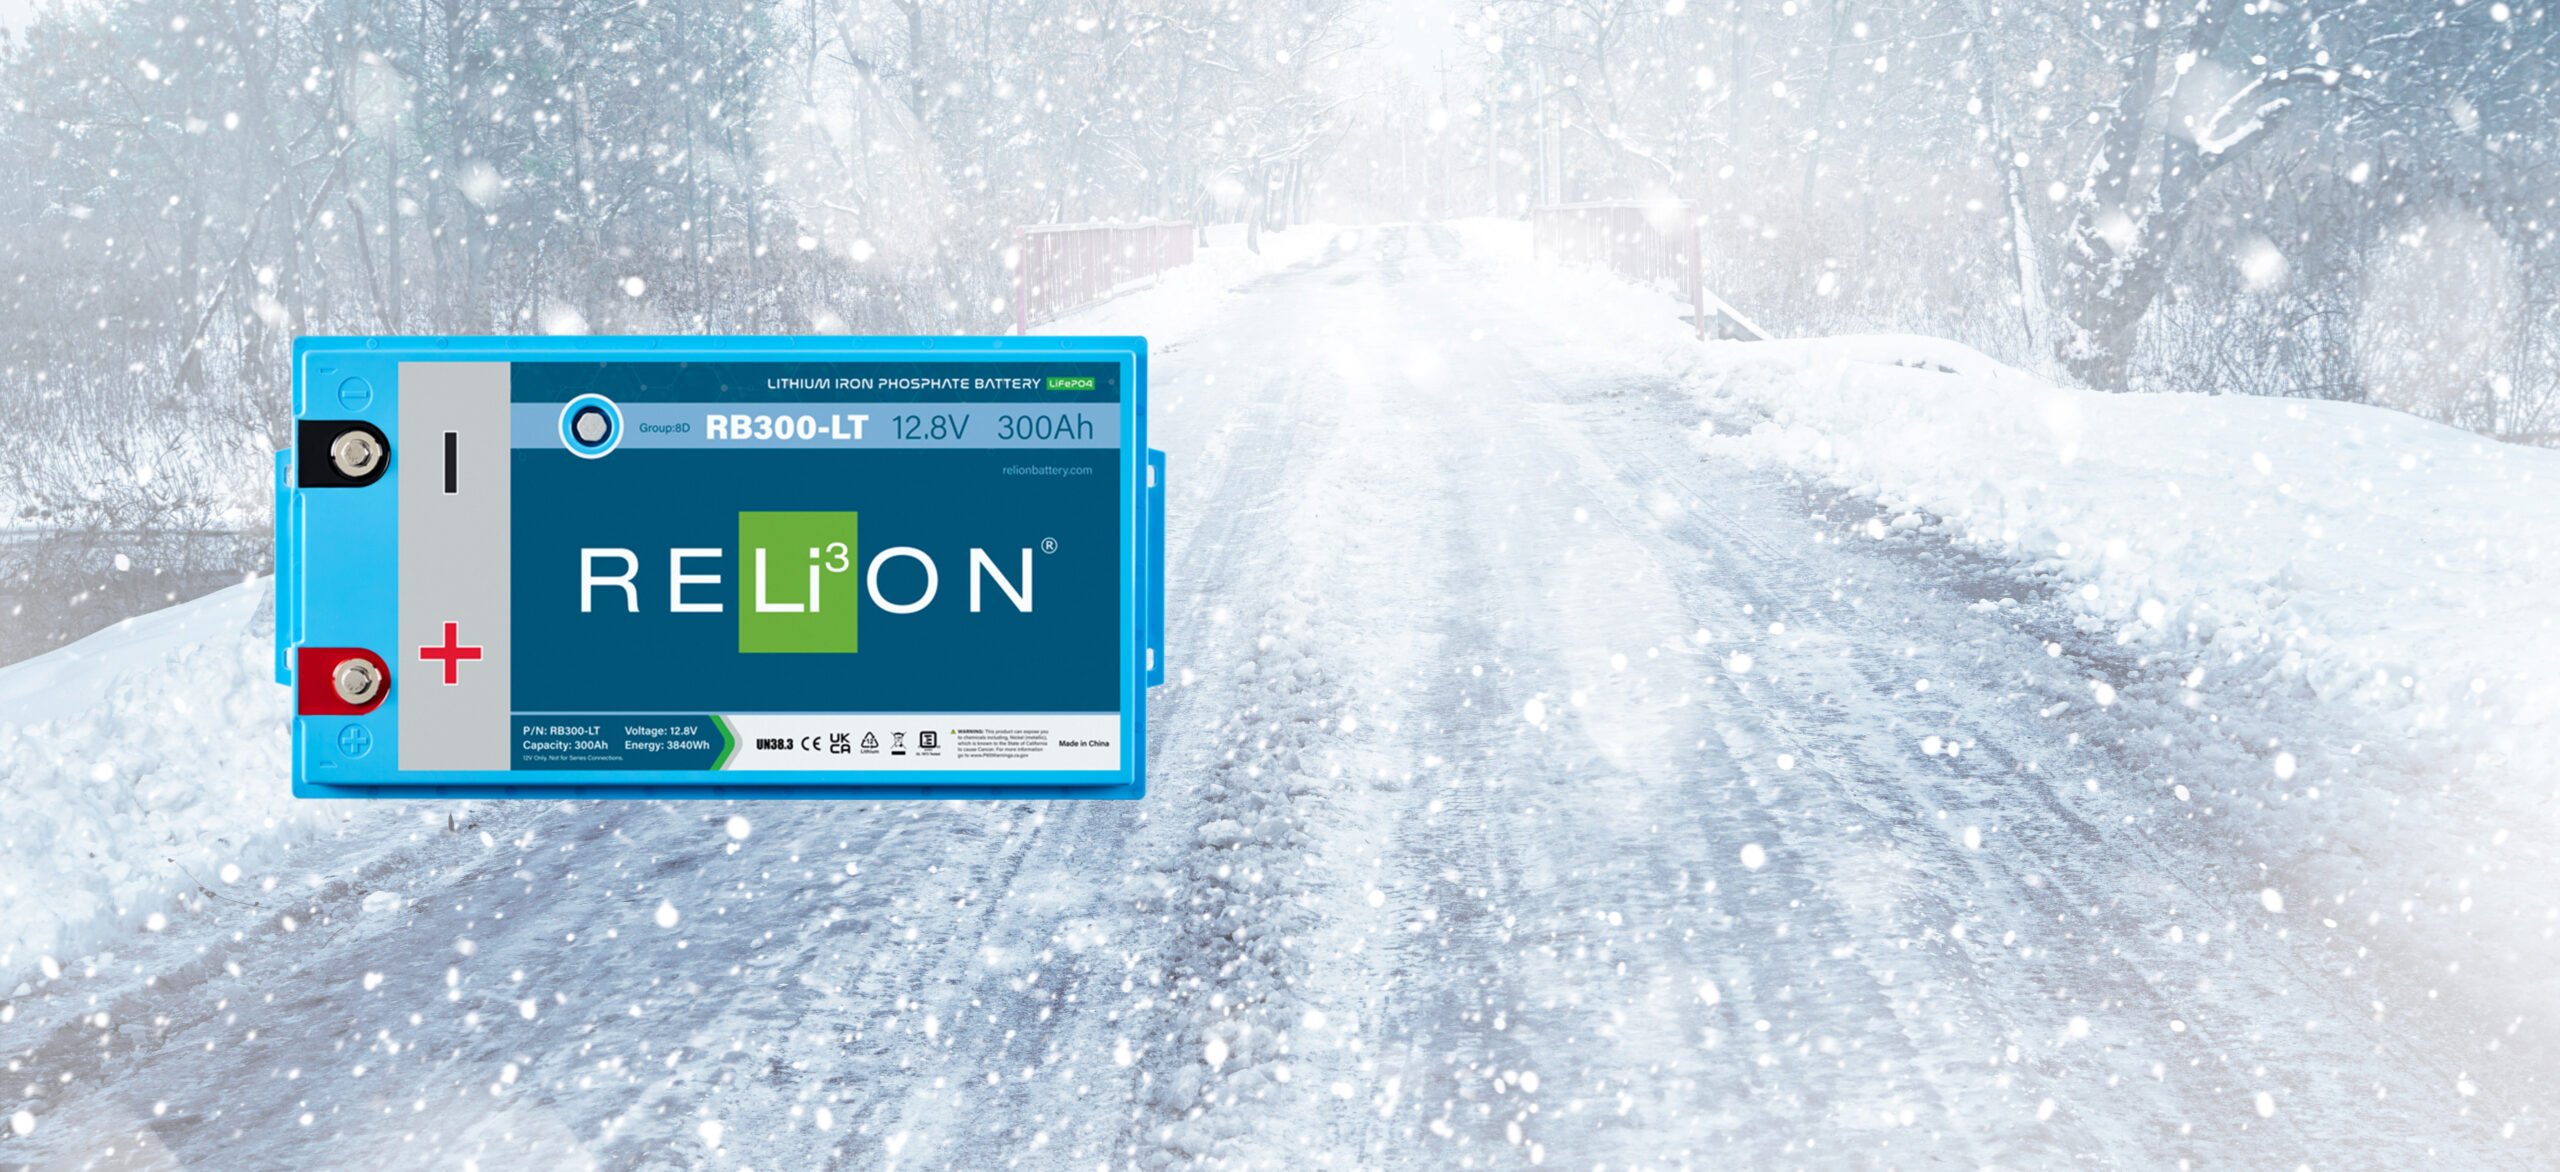 RELiON LT Series Low Temperature Lithium